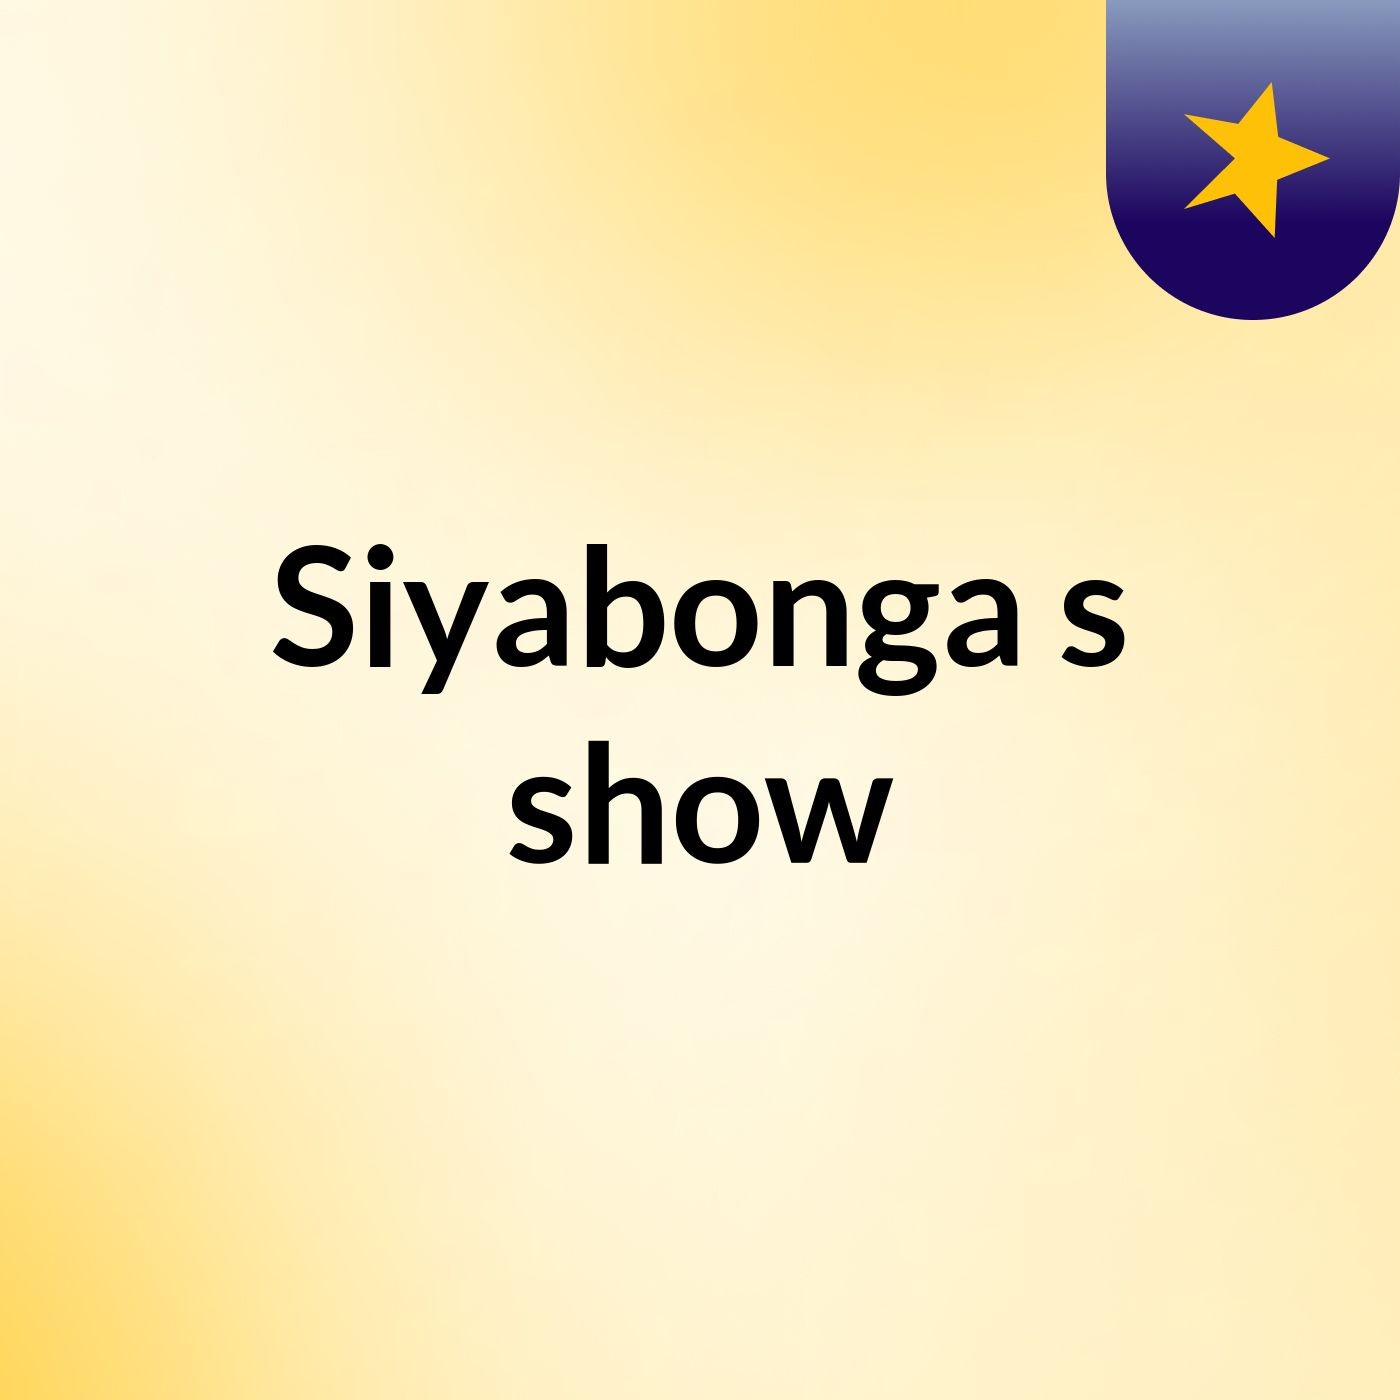 Siyabonga's show